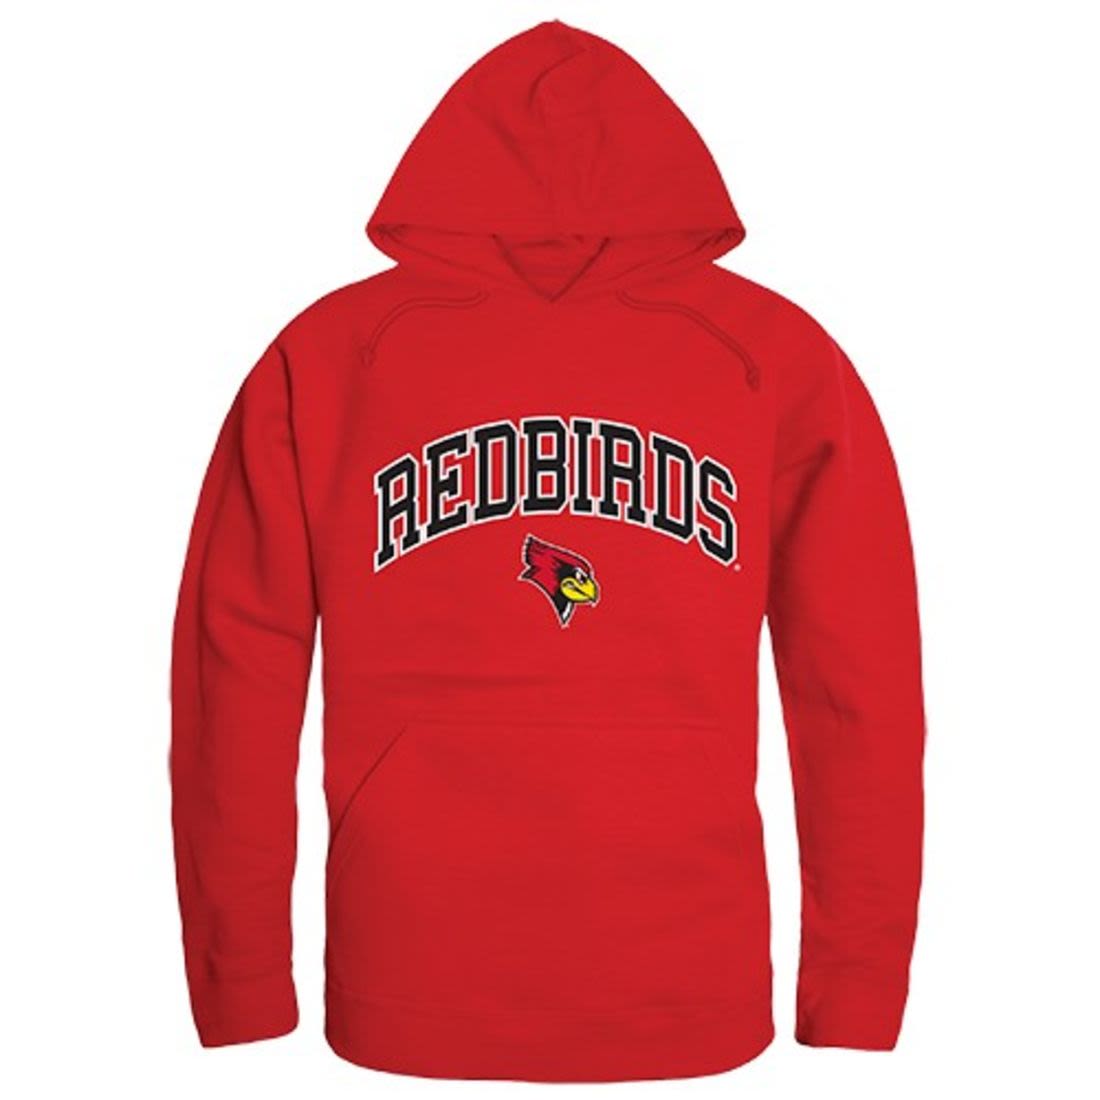 Illinois State University Redbirds Campus Hoodie Sweatshirt Red-Campus-Wardrobe